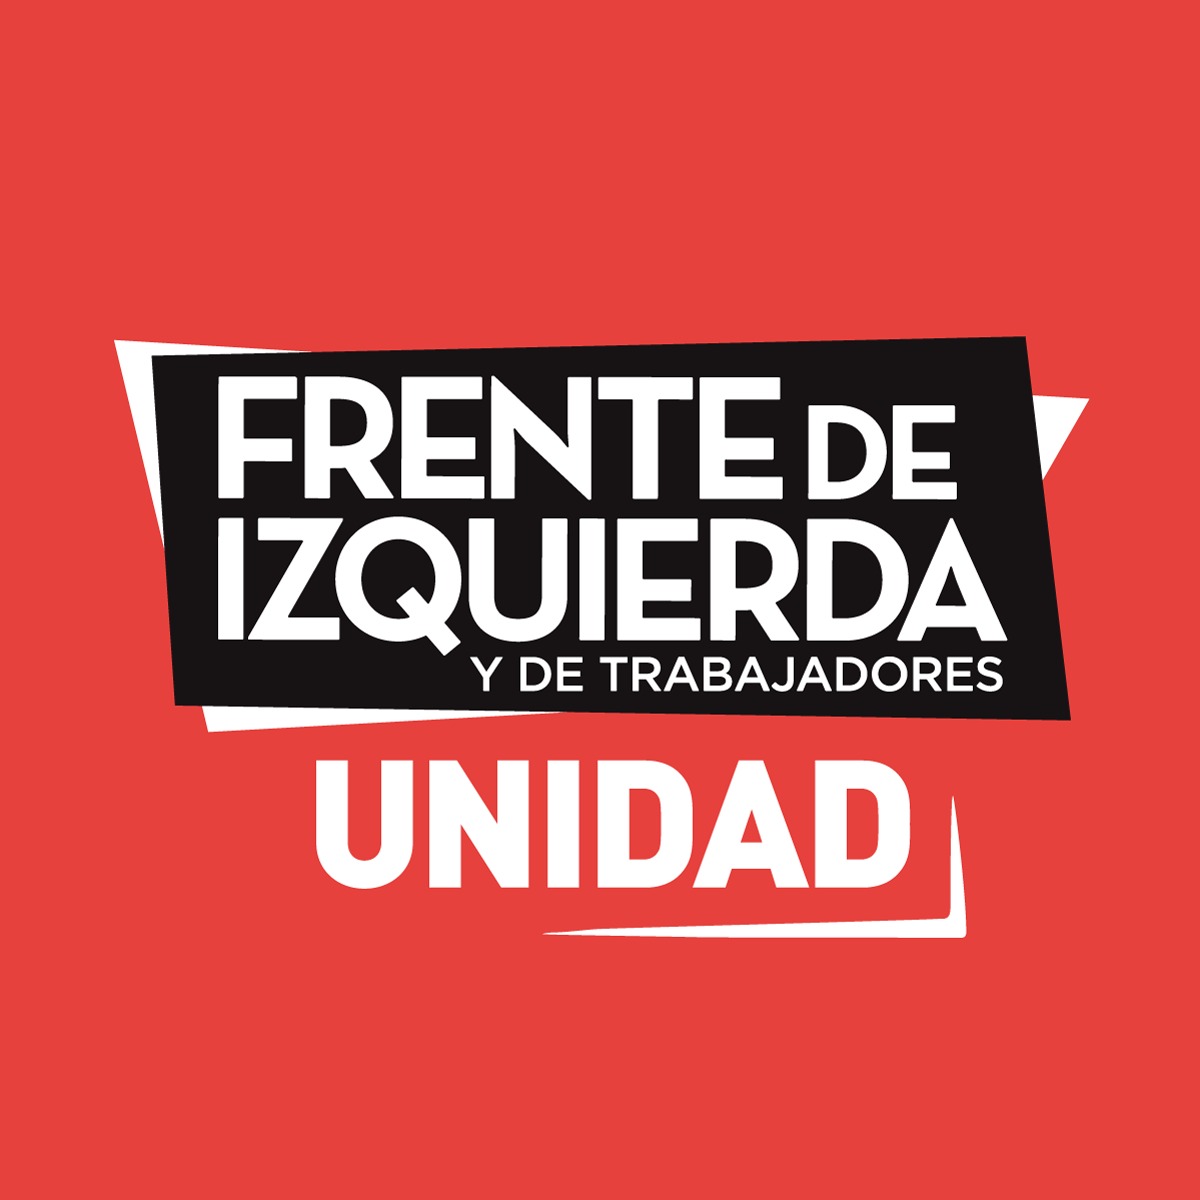 El Frente de Izquierda y de los Trabajadores Unidad en los Concejos Deliberantes de la Provincia de Buenos Aires